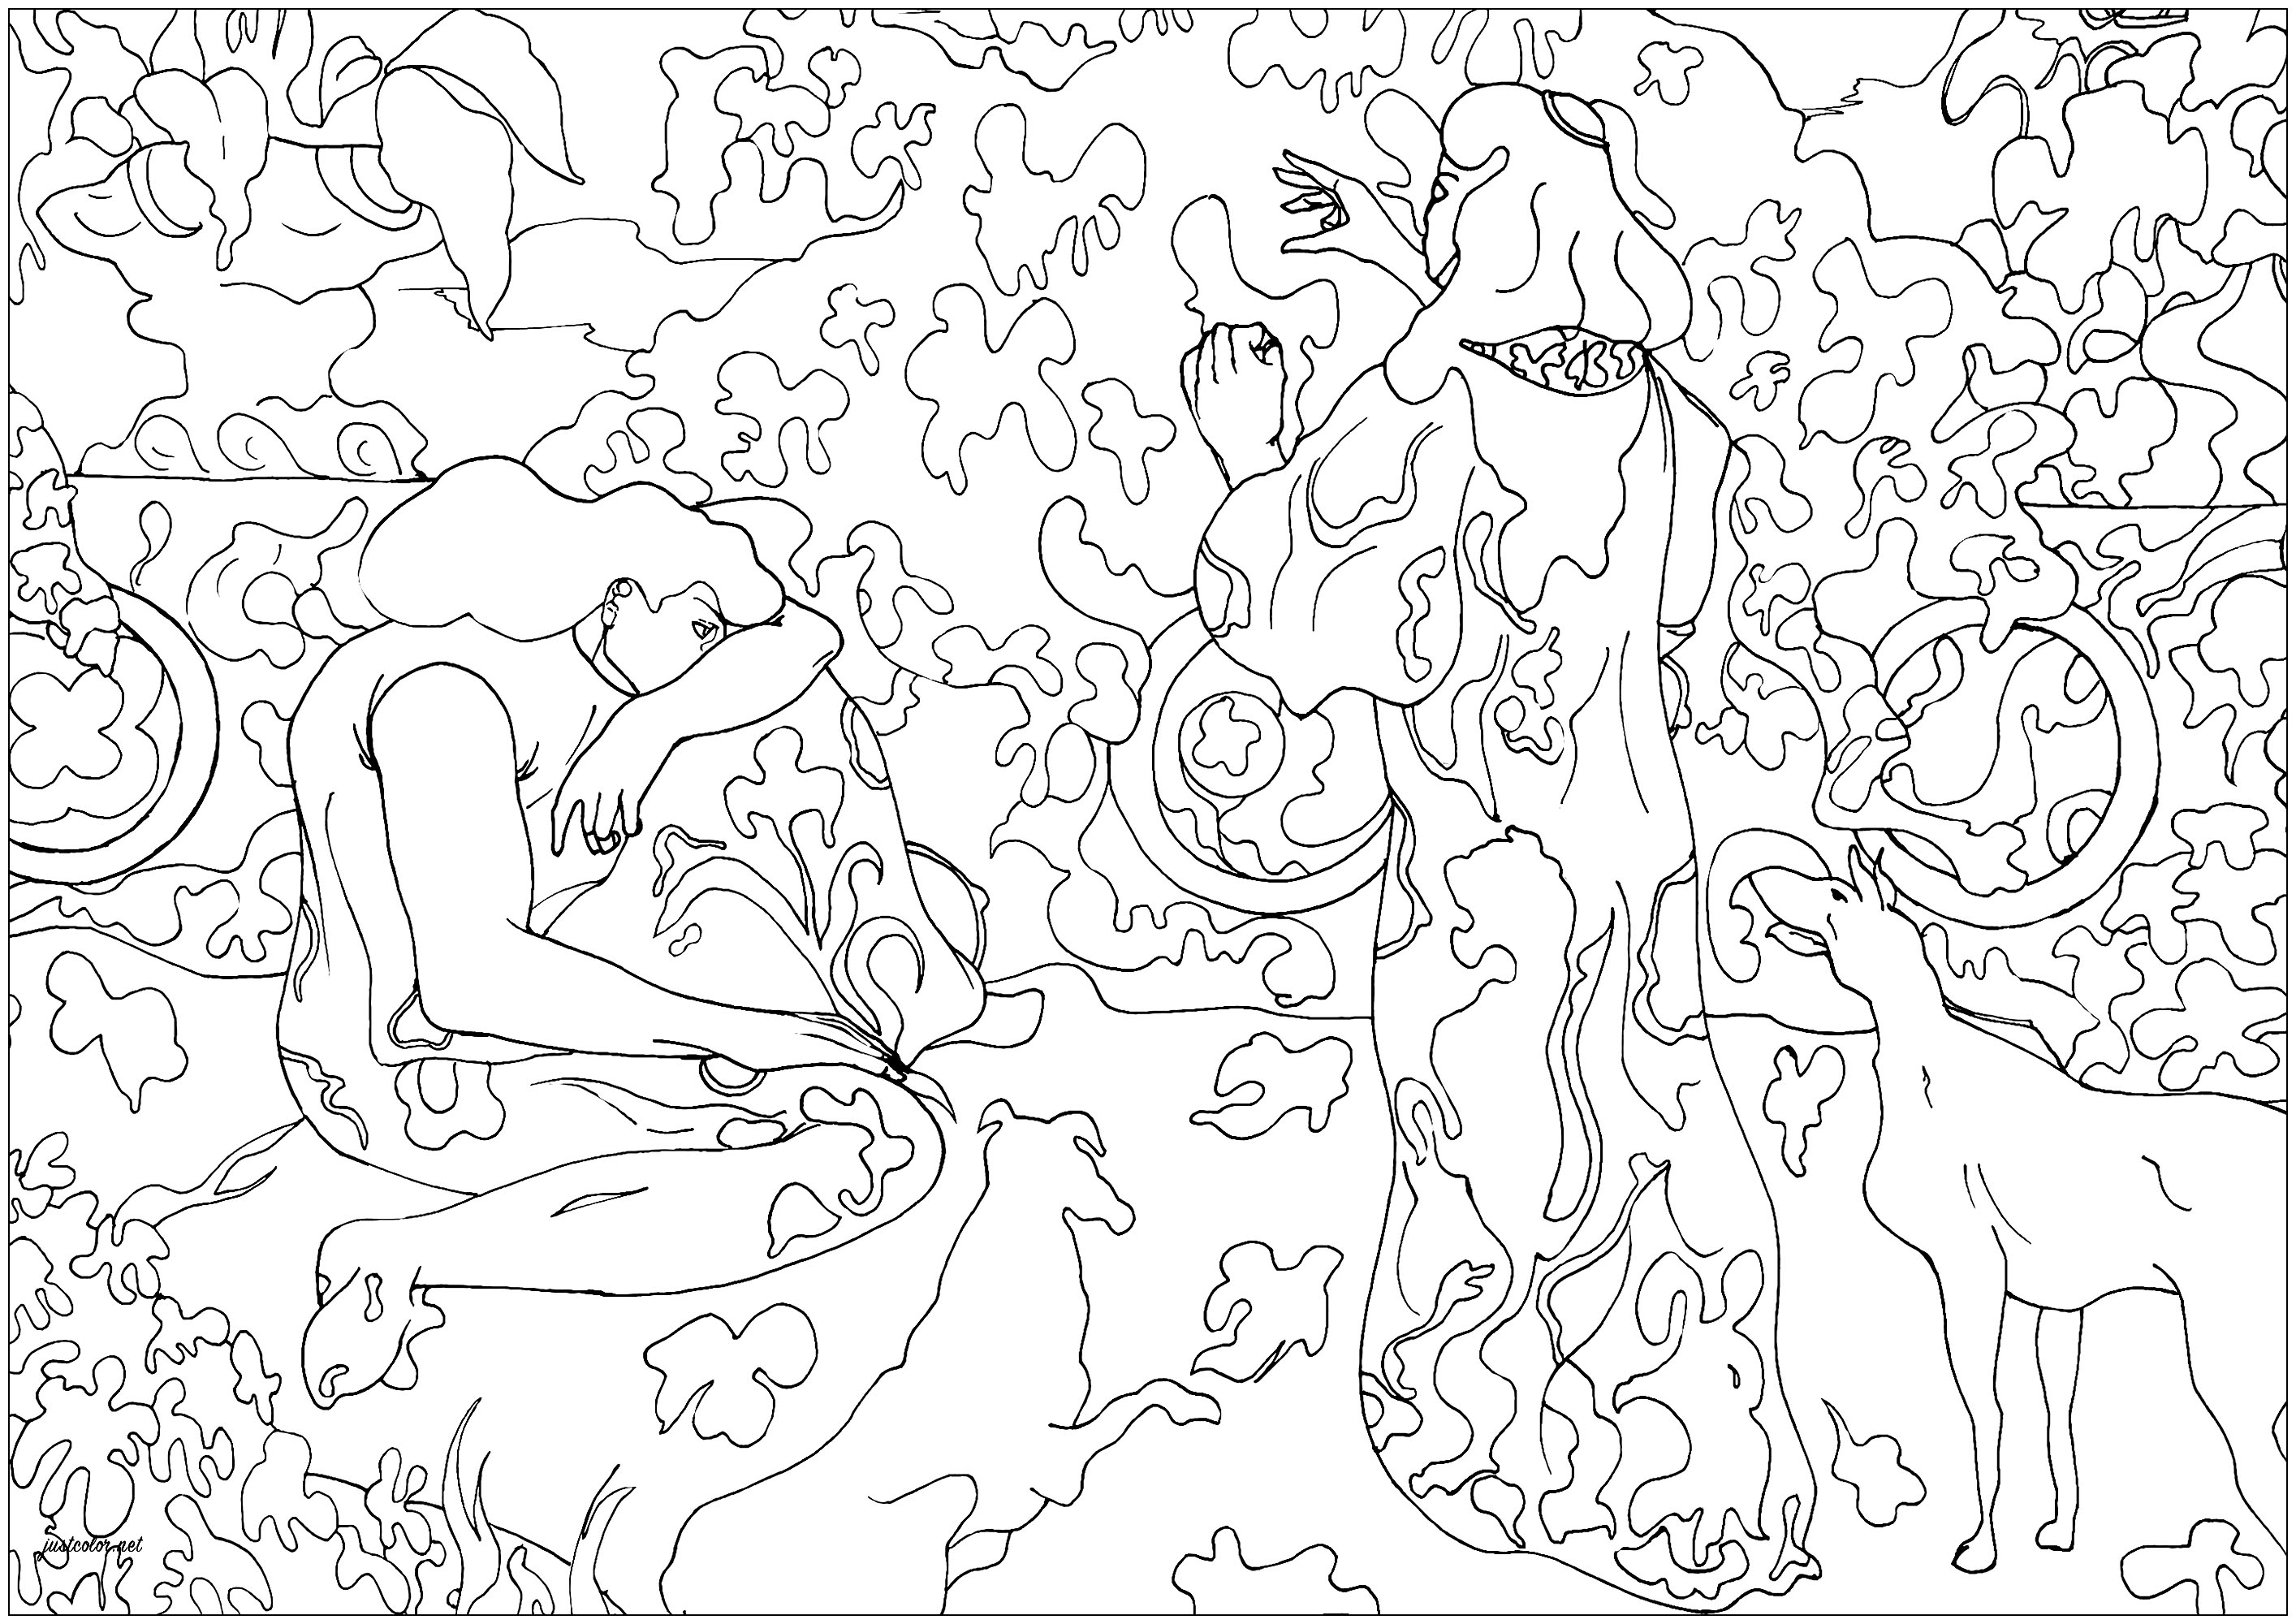 Coloriage créé à partir de 'Les Princesses à la Terasse' par Paul-Élie Ranson (1894). Ce tableau très inspiré des oeuvres japonaises représente deux femmes élégantes et deux chiens, sur ce qui semble être la terrasse d'un riche domaine, Artiste : Amine